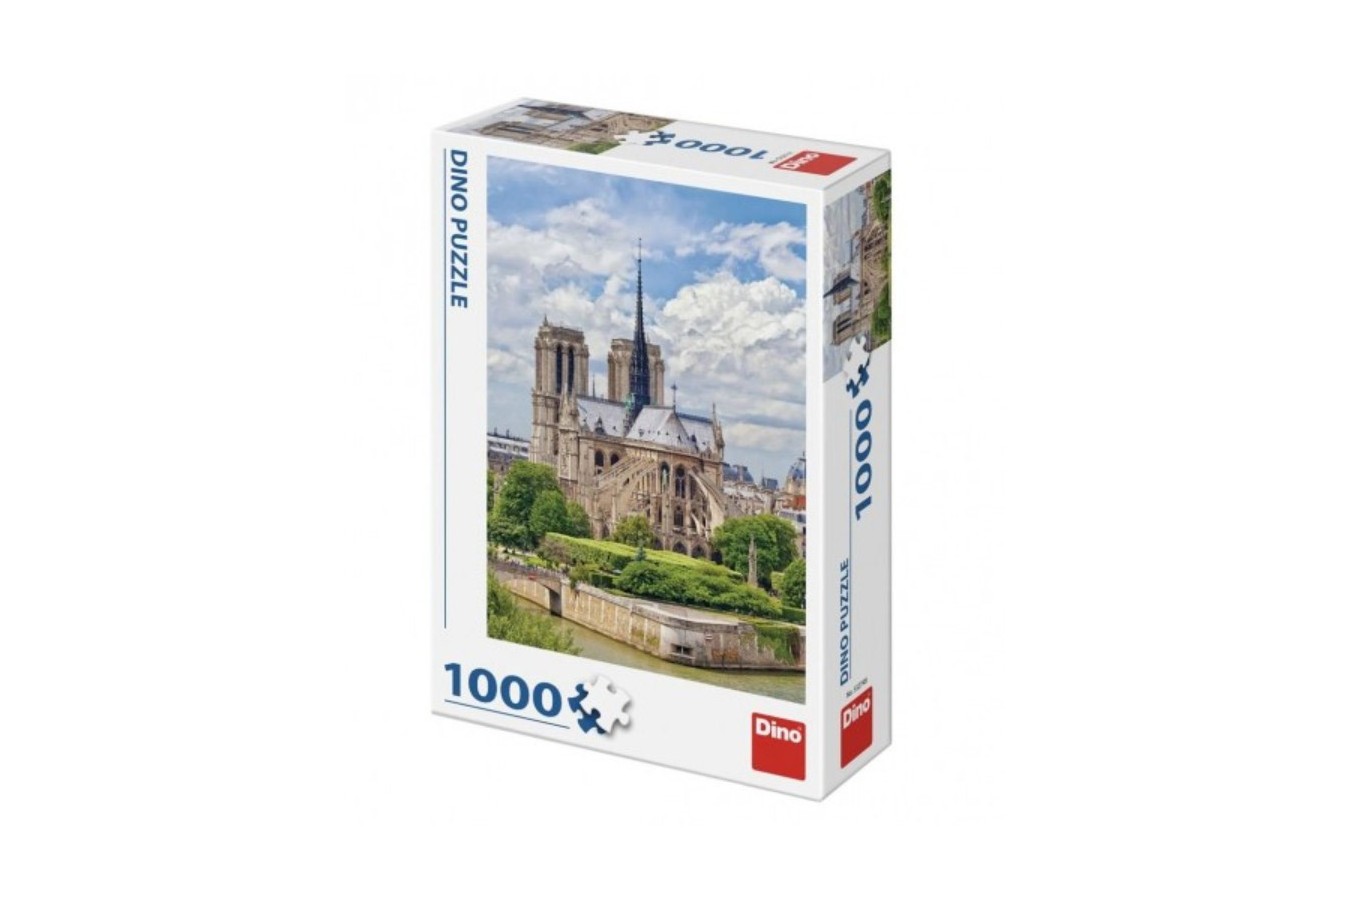 Puzzle Dino - Cathedrale Notre-Dame de Paris, 1000 piese (53274)